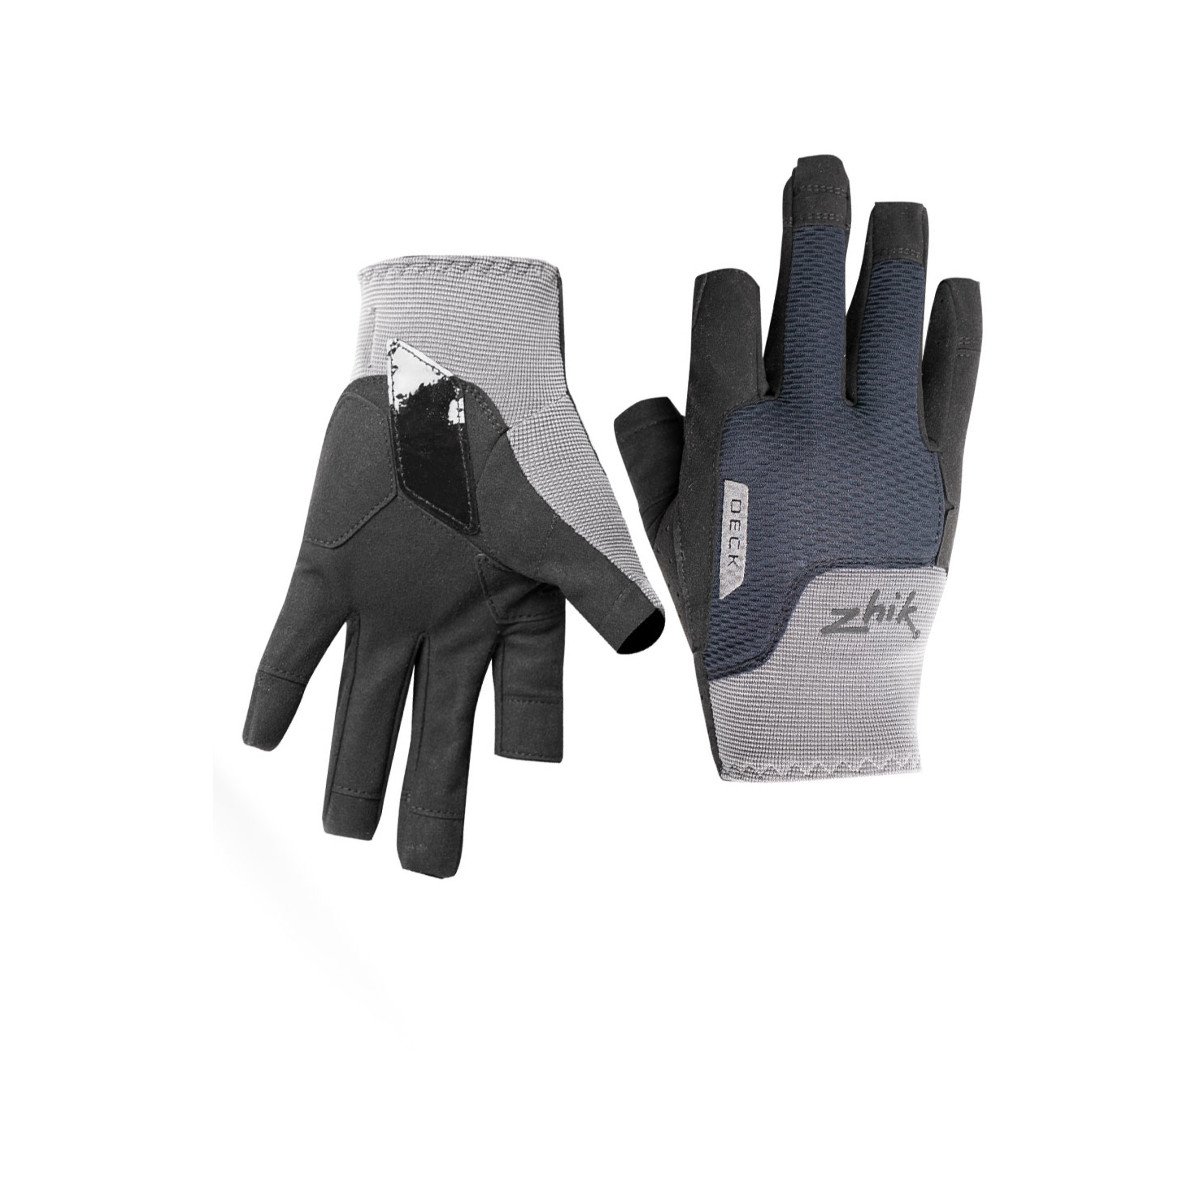 Zhik Deck gants de voile à doigts longs, unisexe - gris, taille M